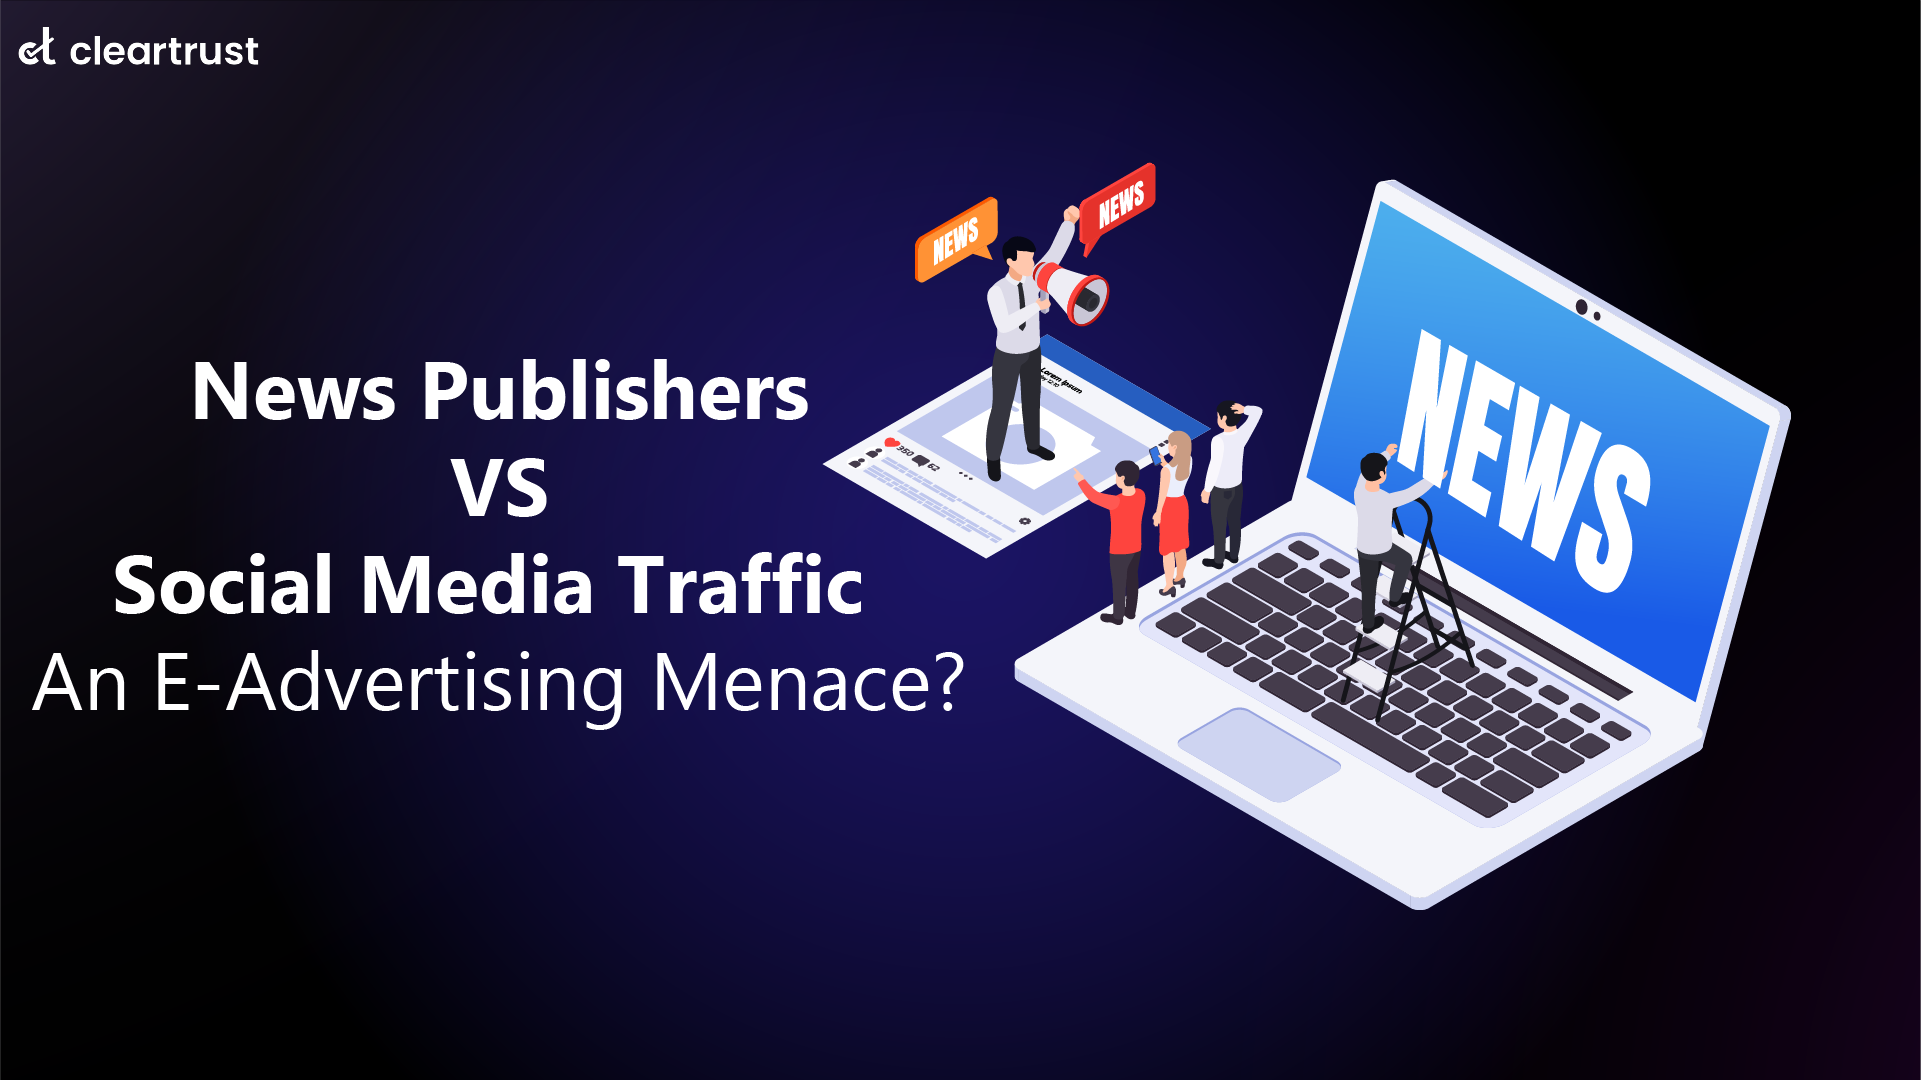 News Publishers vs Social Media Traffic - An e-advertising menace?